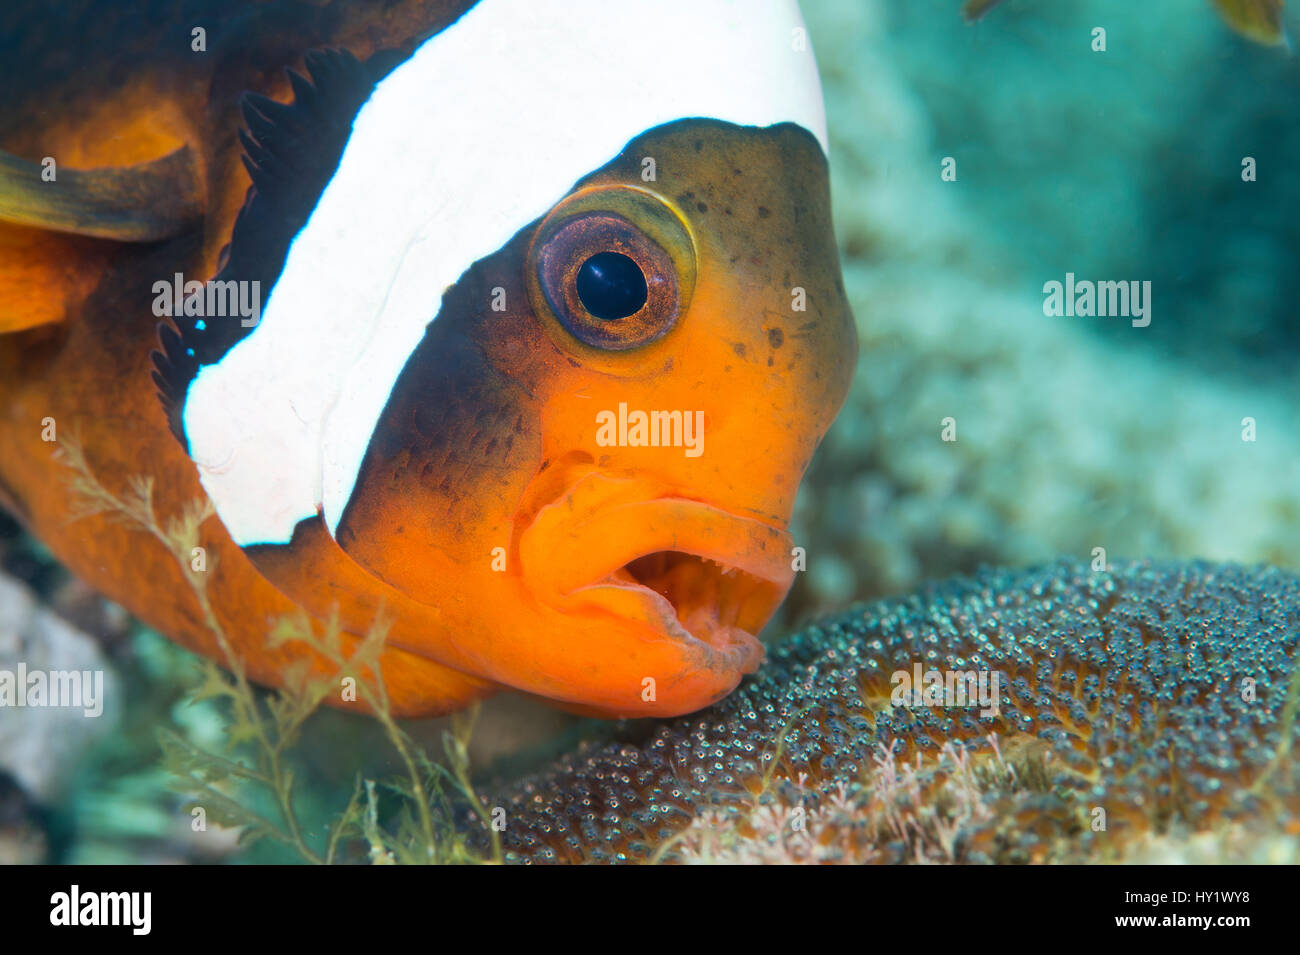 Adultos anemonefish Saddleback (Amphiprion polymnus) airea sus huevos en desarrollo. Dauin, Negros, Dumaguete, Filipinas. Mar de Bohol, oeste del océano Pacífico tropical. Foto de stock